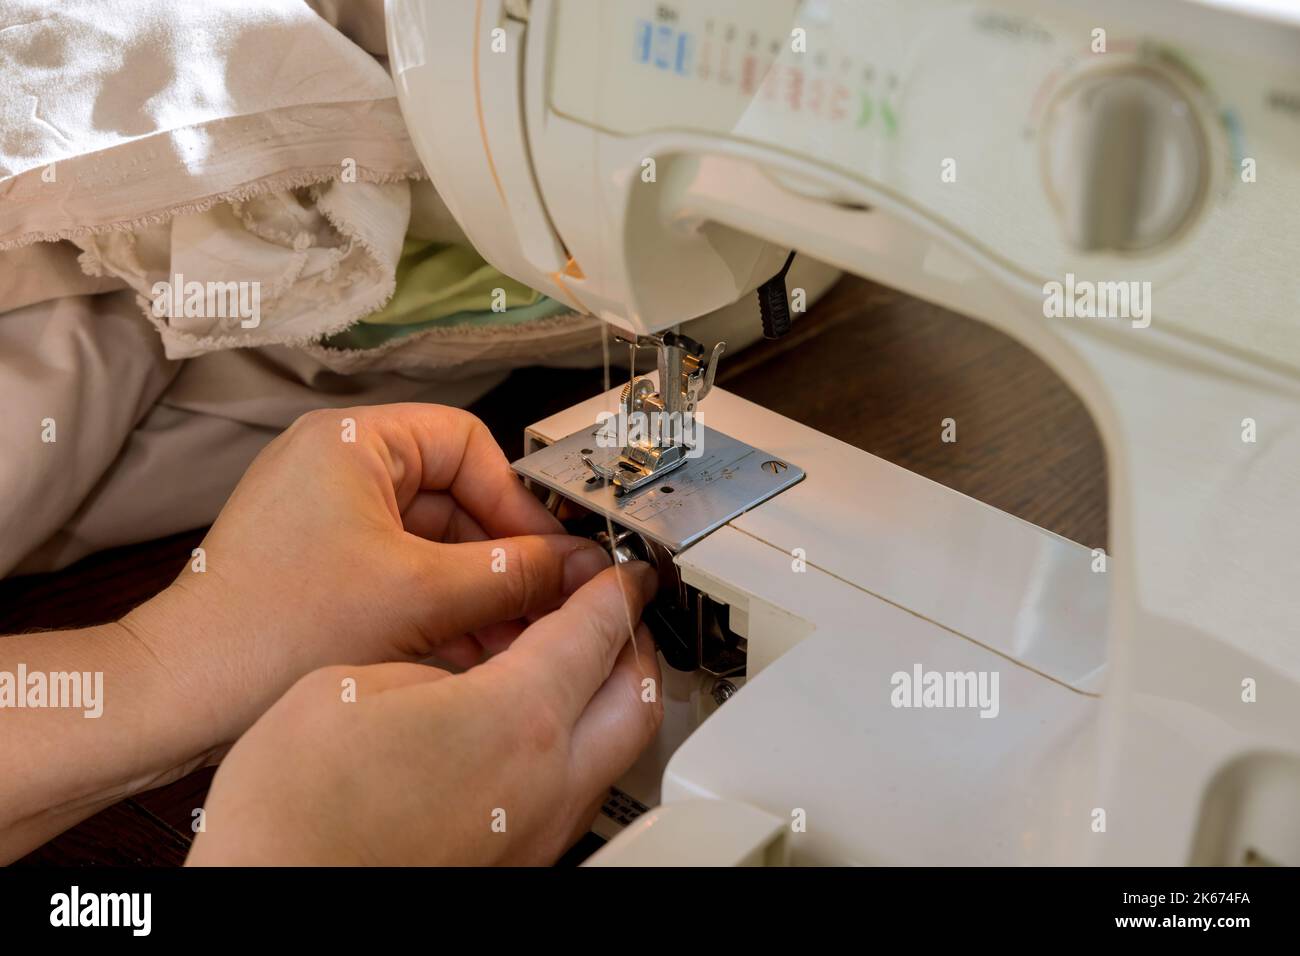 Pendant le processus de couture, la couture place les fils sur une bobine métallique dans la machine à coudre Banque D'Images